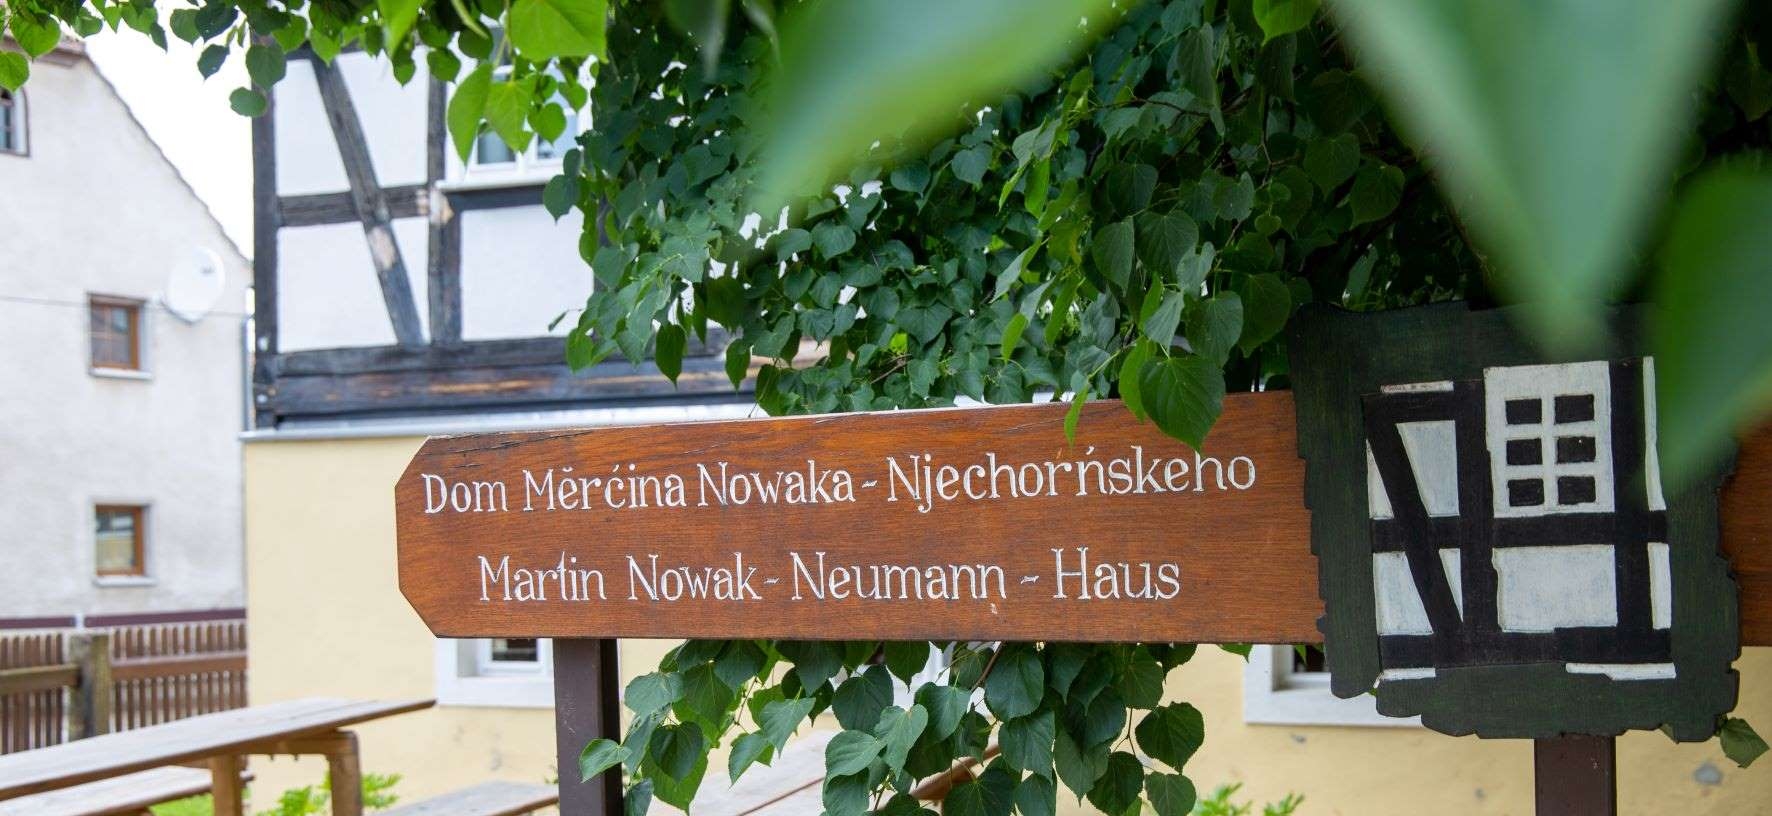 Digitaler Rundgang durchs Martin-Nowak-Haus in Nechern 